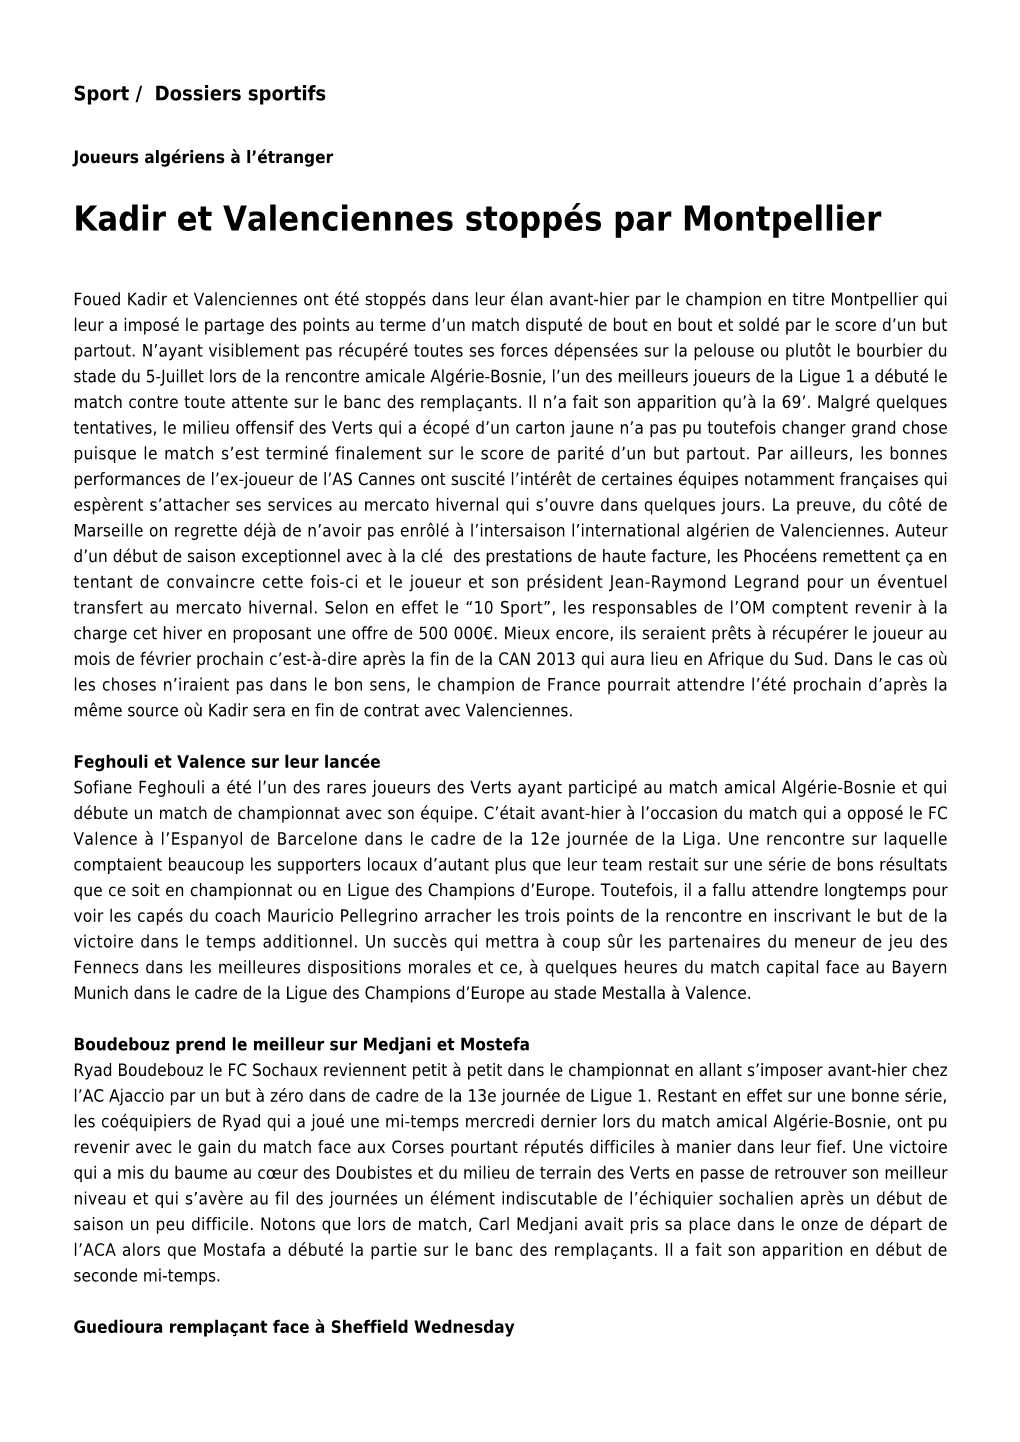 Kadir Et Valenciennes Stoppés Par Montpellier